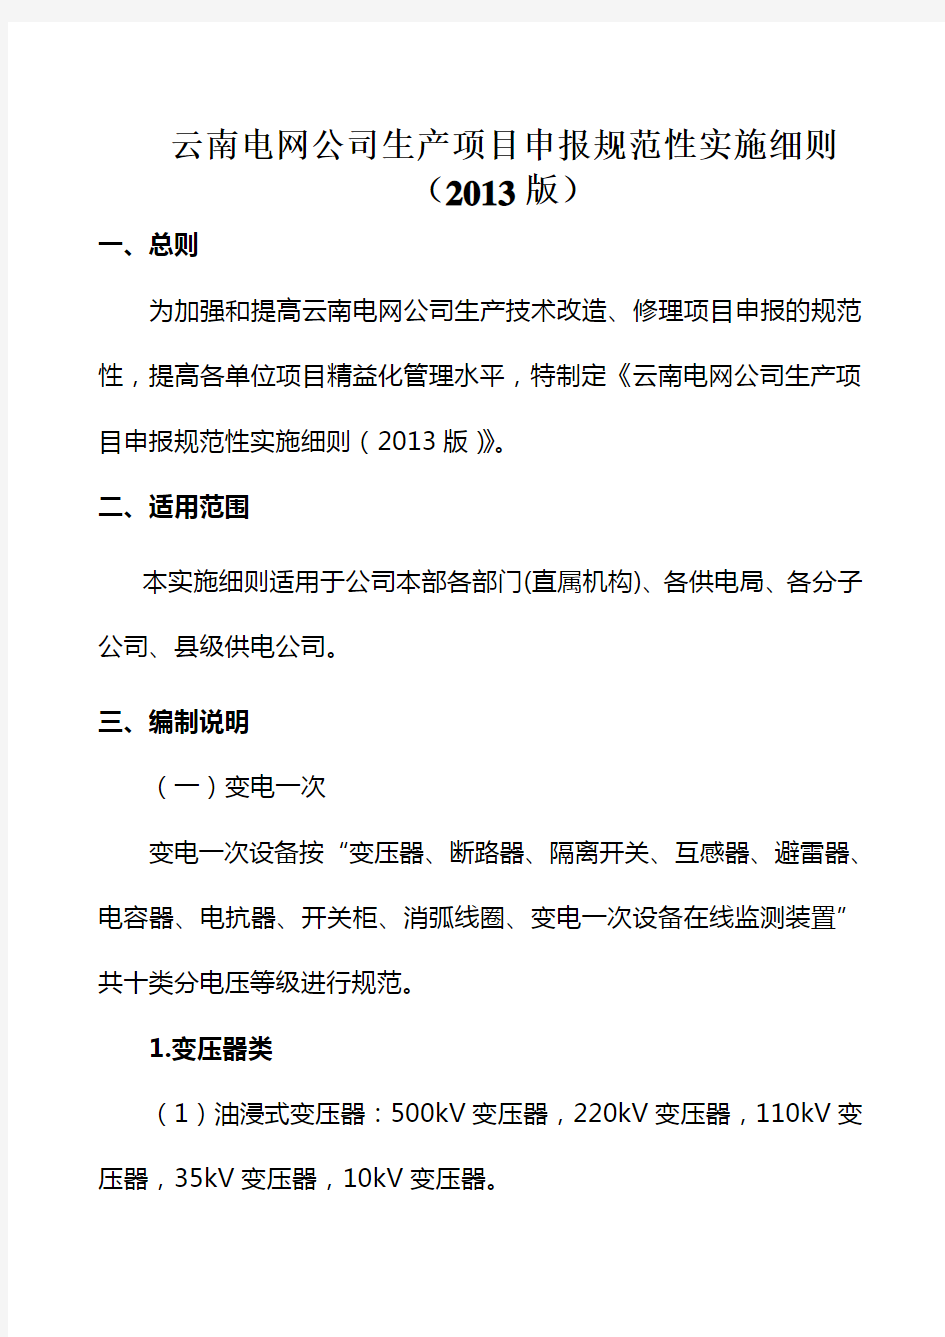 云南电网公司生产项目申报规范性实施细则(2013版)